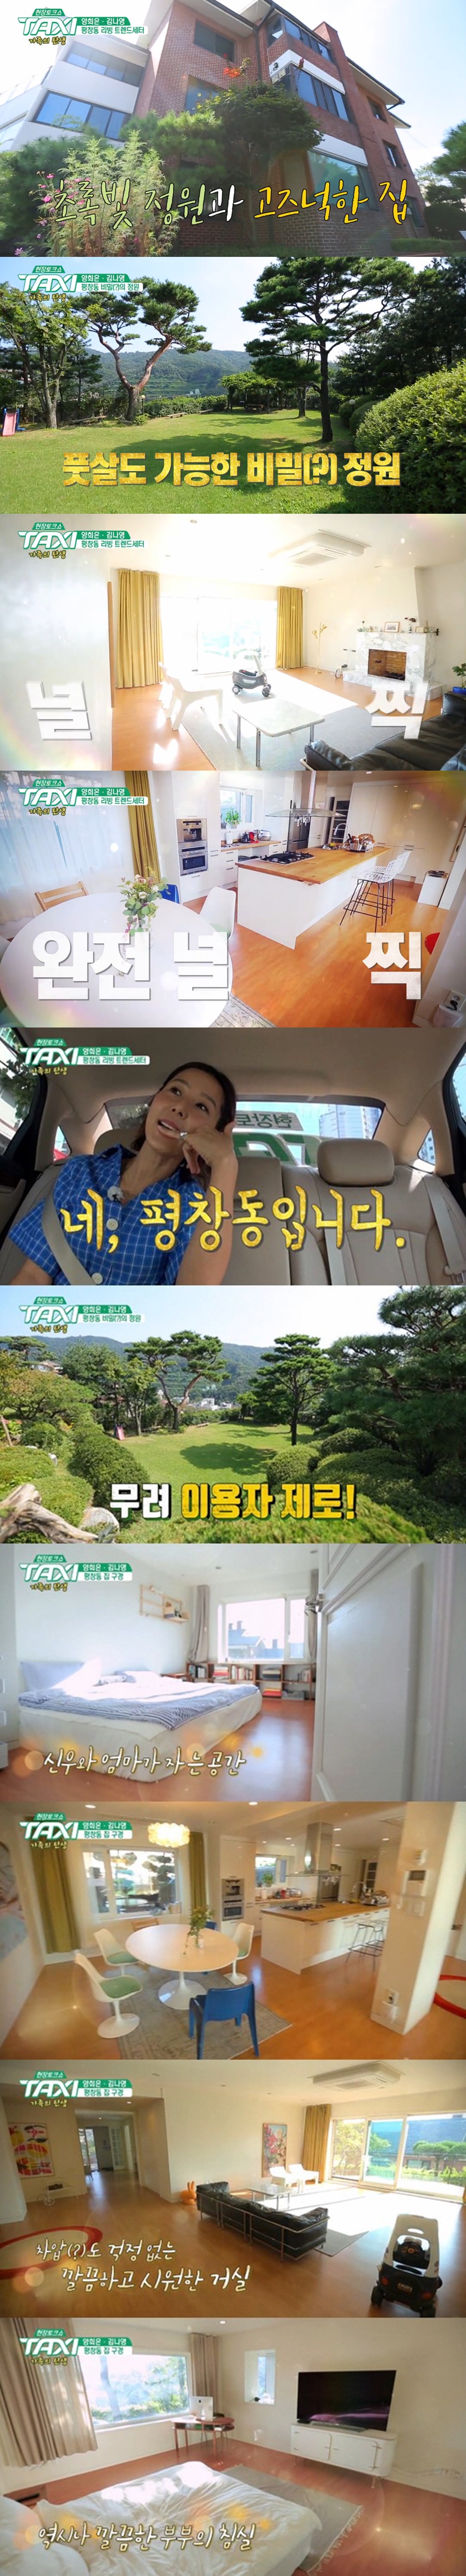 사진: 김나영 평창동 집 / tvN '택시' 김나영 편 방송 캡처